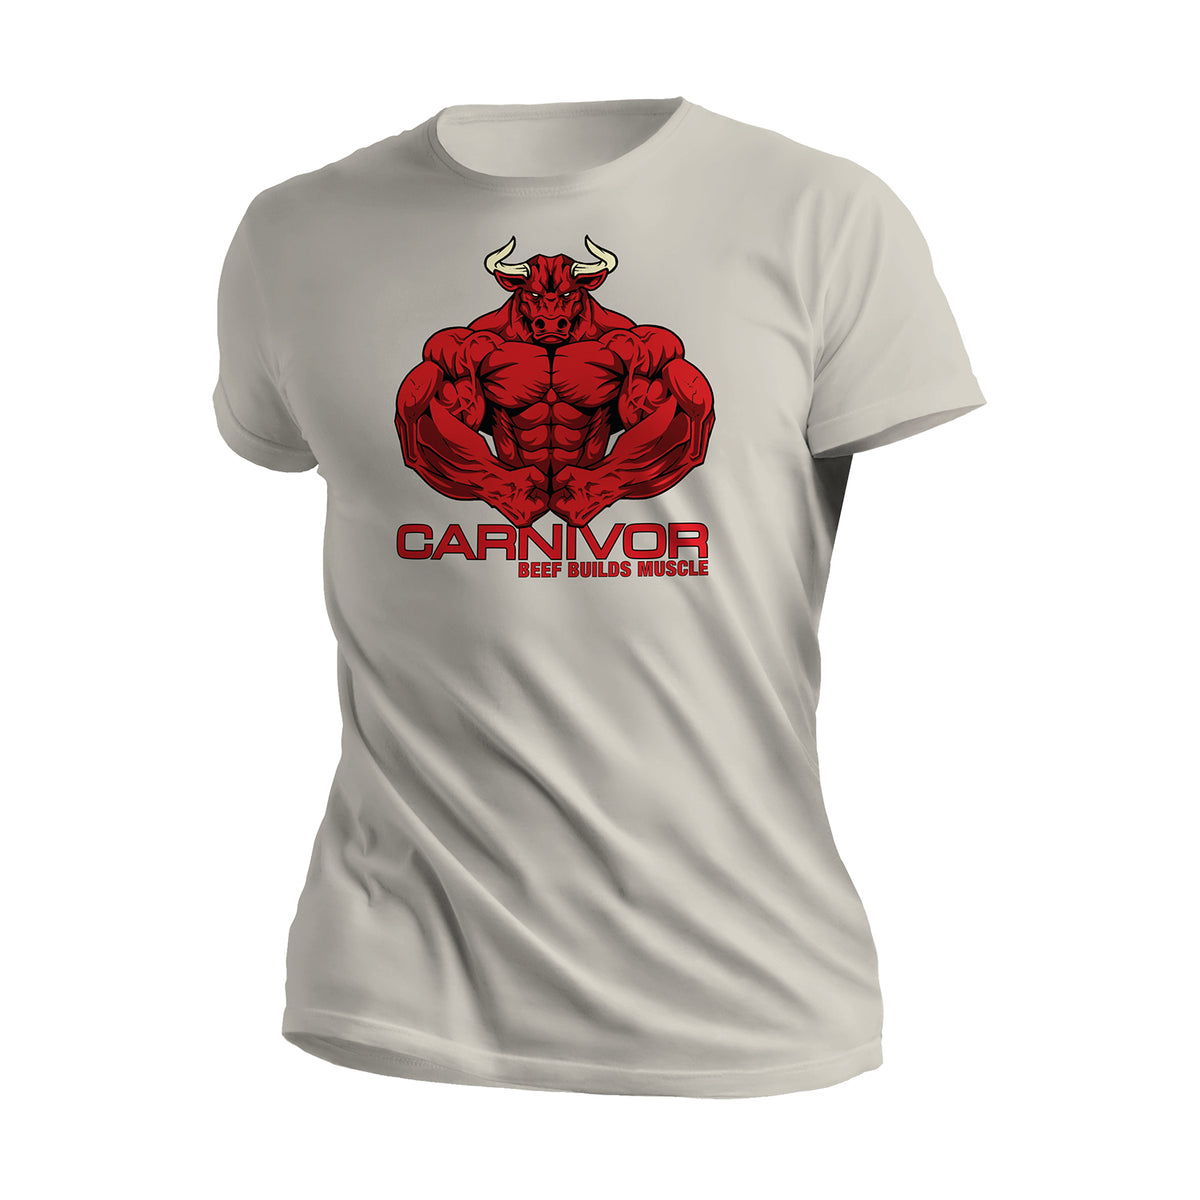 Most Muscular Bull - Sand T-Shirt